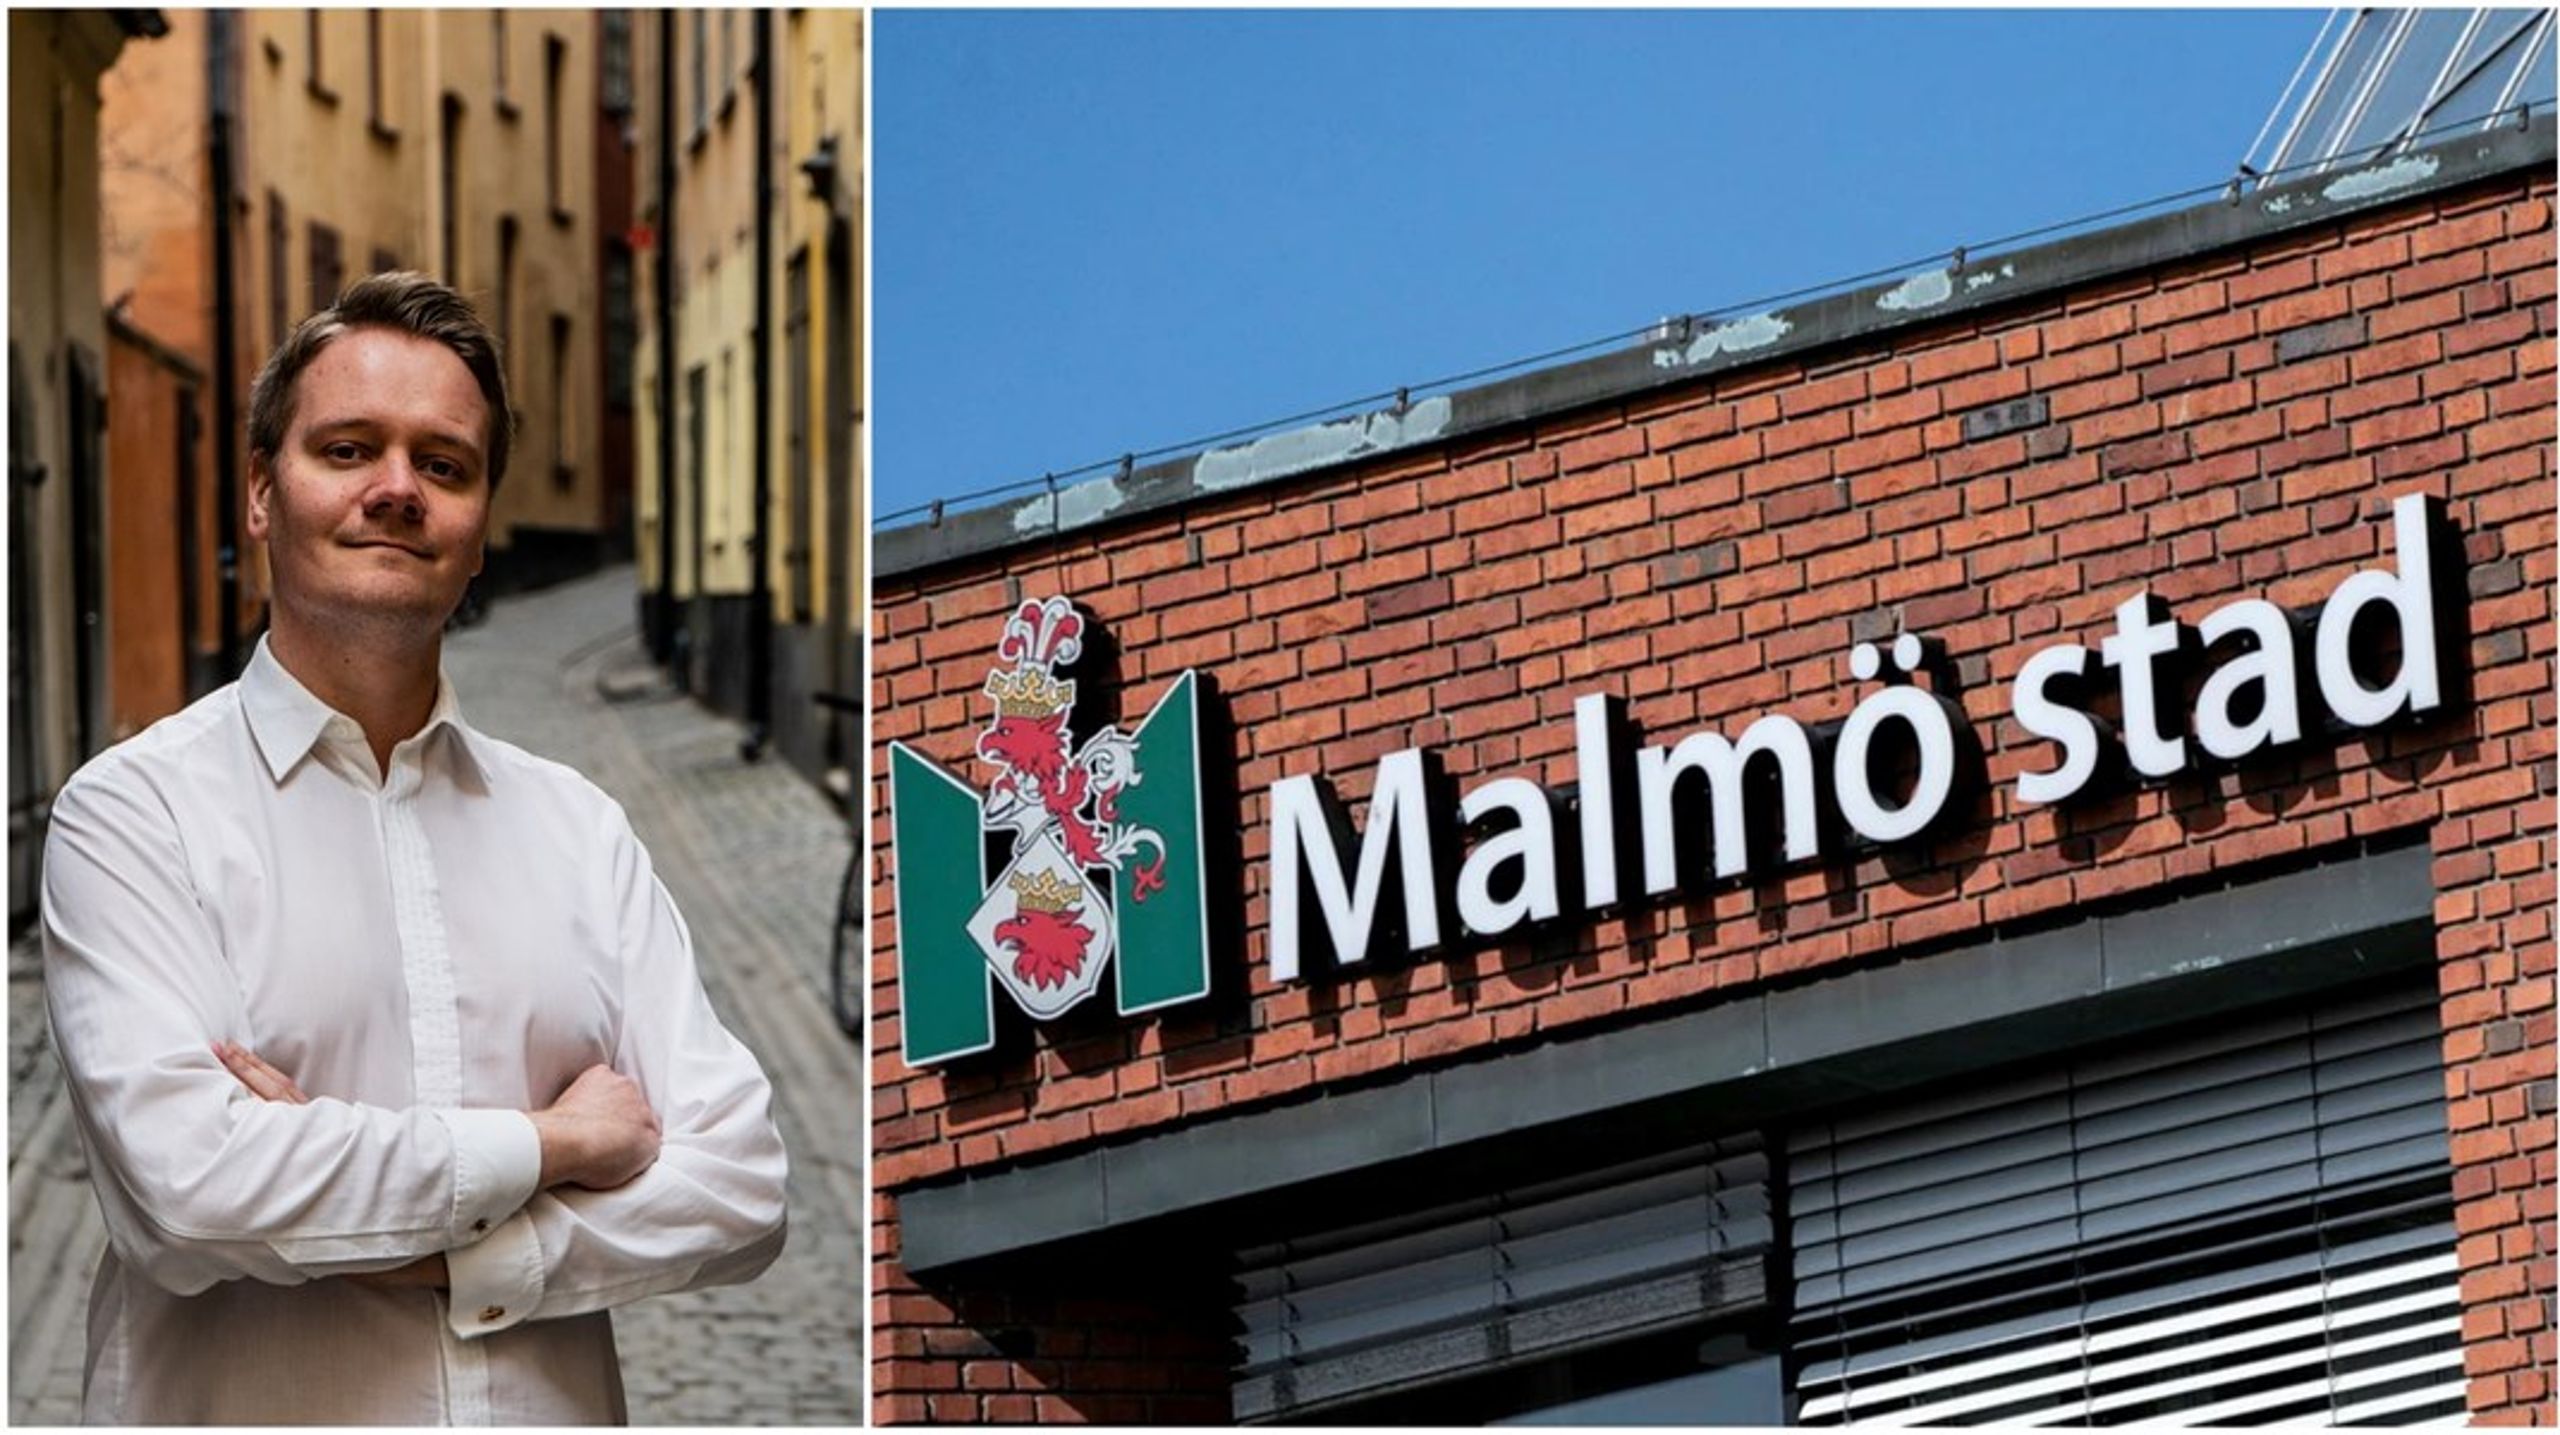 ”Den största bidragstagaren är Malmö stad, en kommun som har satt i system att leva över sina tillgångar och slösa med skattepengar.”, skriver debattören.